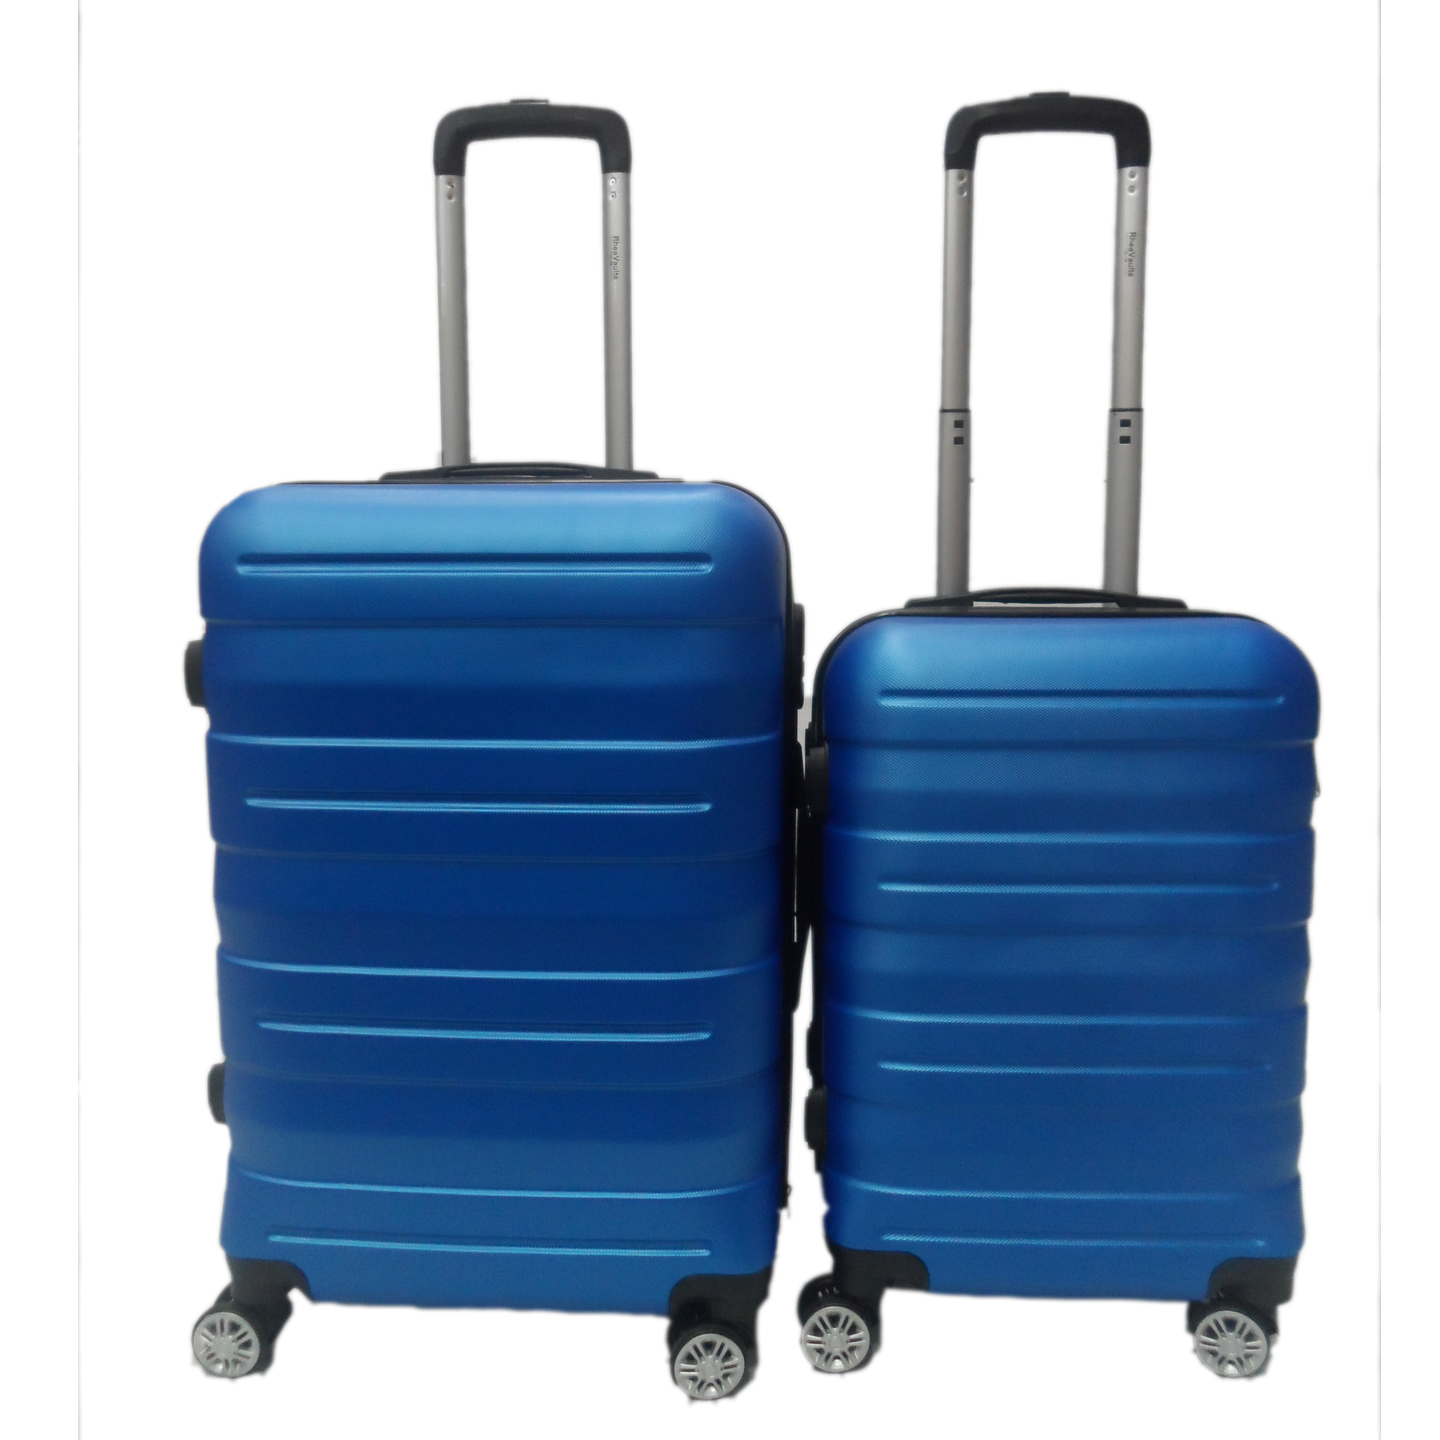 RV-131 Elegant Hard Box Luggage- Blue 20 inch and 24 inch